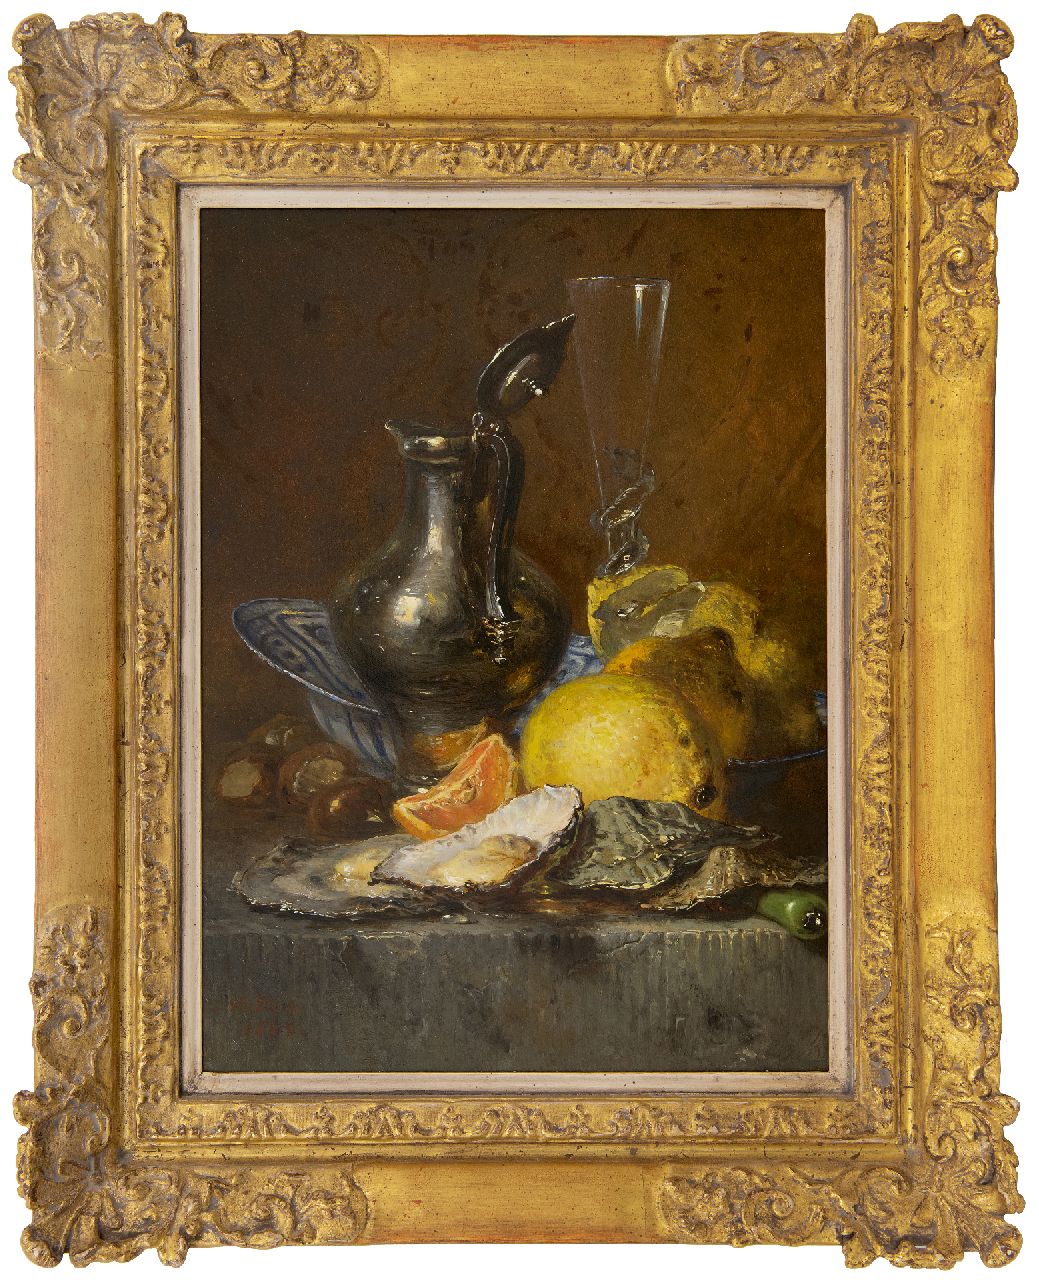 Vos M.  | Maria Vos, Stilleven met oesters, citroenen en zilveren kan, olieverf op paneel 38,6 x 27,6 cm, gesigneerd linksonder en gedateeerd 1880